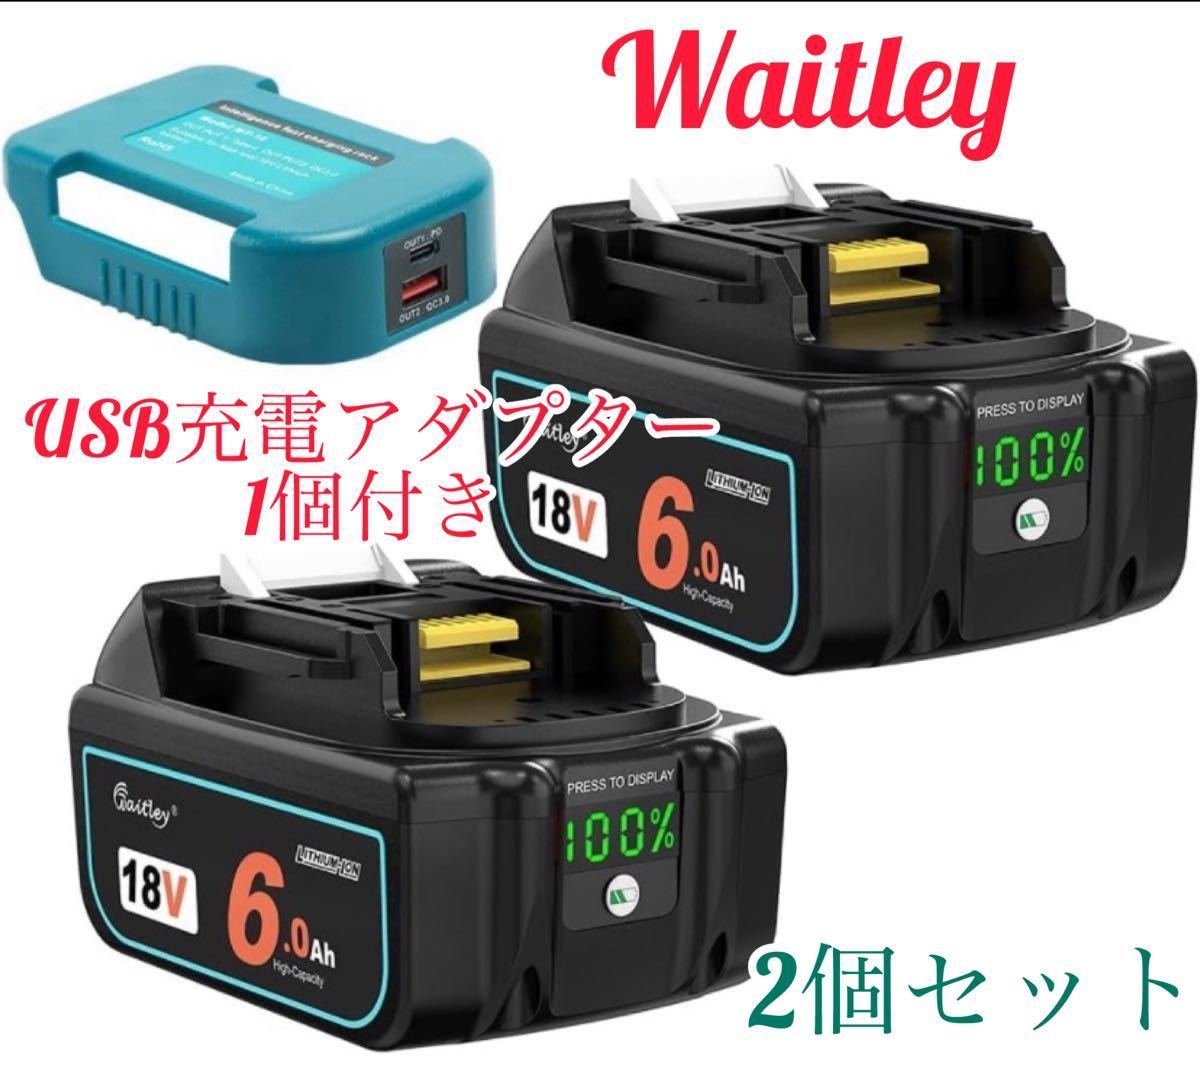 {3 позиций комплект } новая модель Waitley Makita сменный аккумулятор BL1860B (2 шт )USB зарядка адаптор (1 шт )